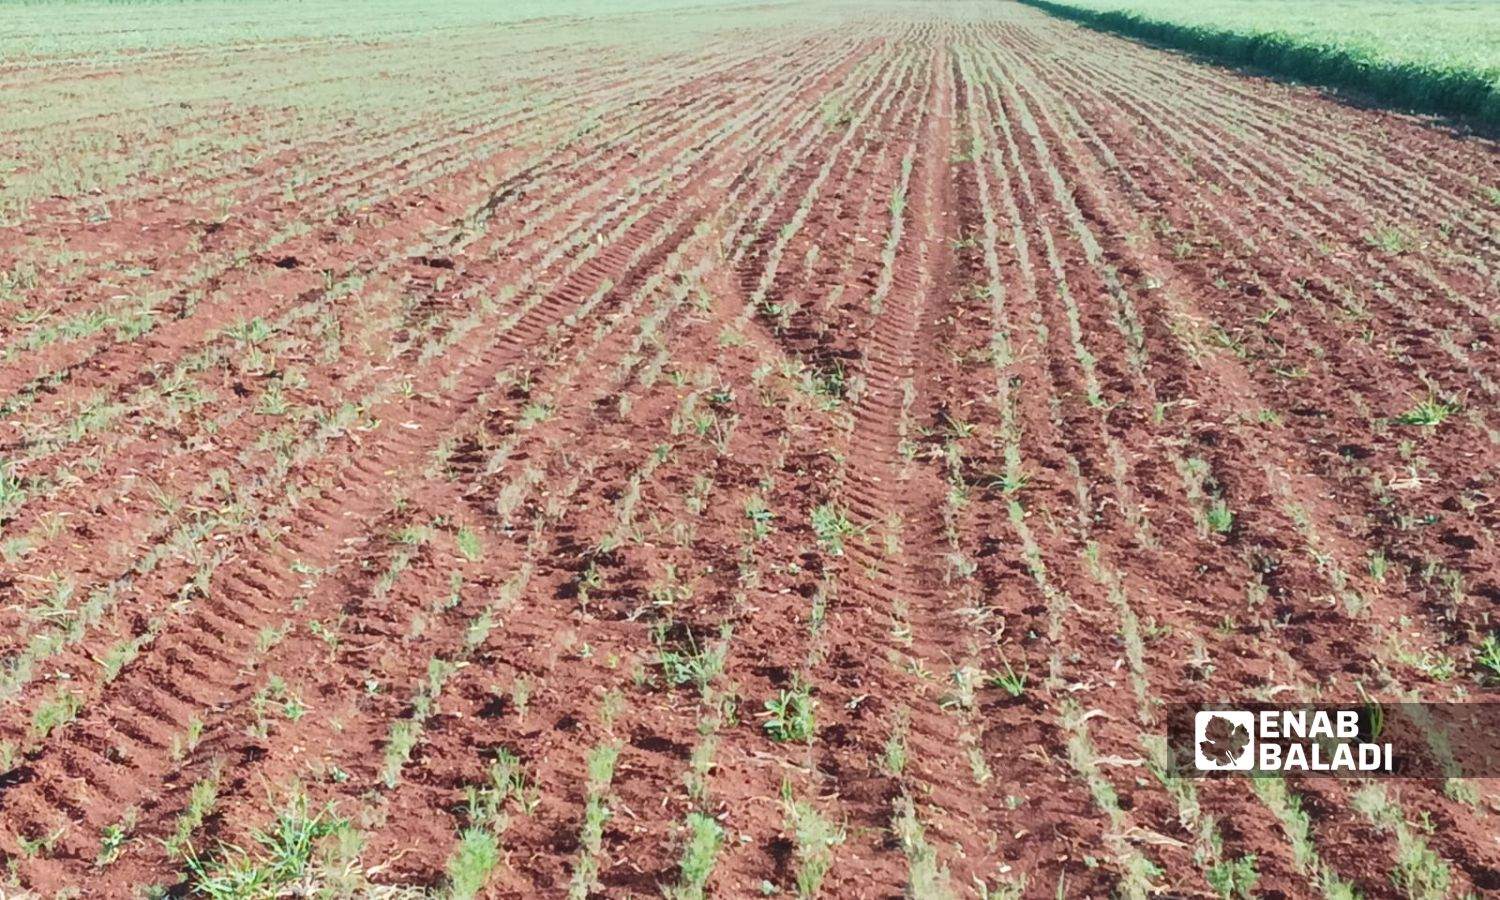 أرض زراعية مزروعة كمون طالتها أضرار الهطولات المطرية المتأخرة بريف إدلب الشرقي- 3 من نيسان 2023 (عنب بلدي)